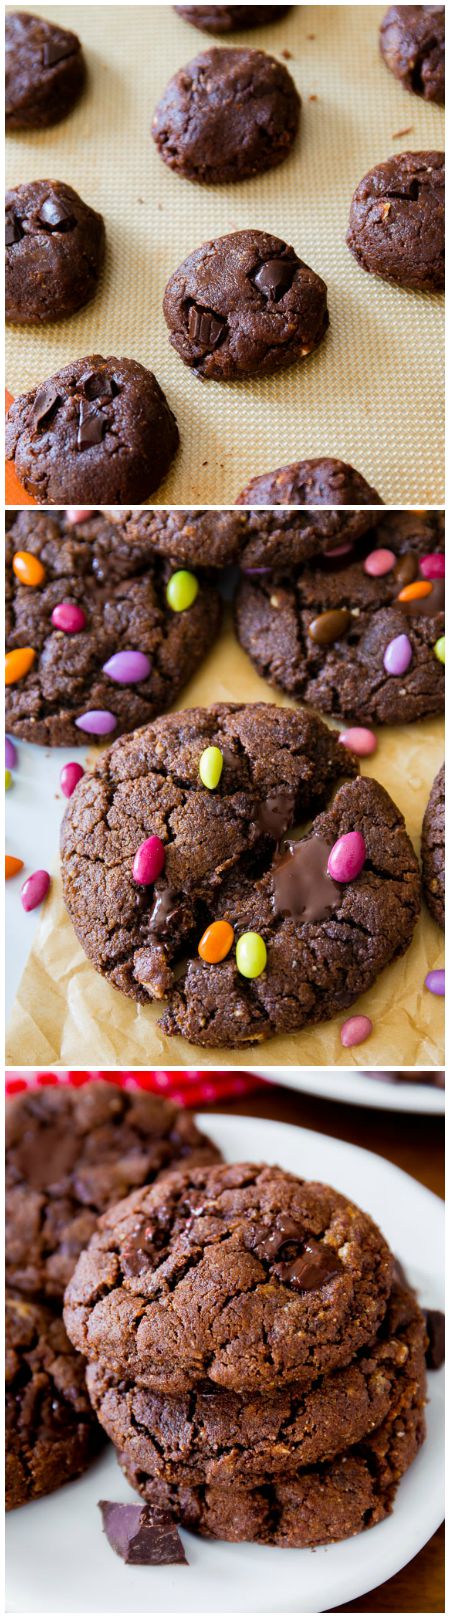 Biscuits au chocolat noir sans farine à 6 ingrédients! Simple, sain, rapide! Recette trouvée sur sallysbakingaddiction.com